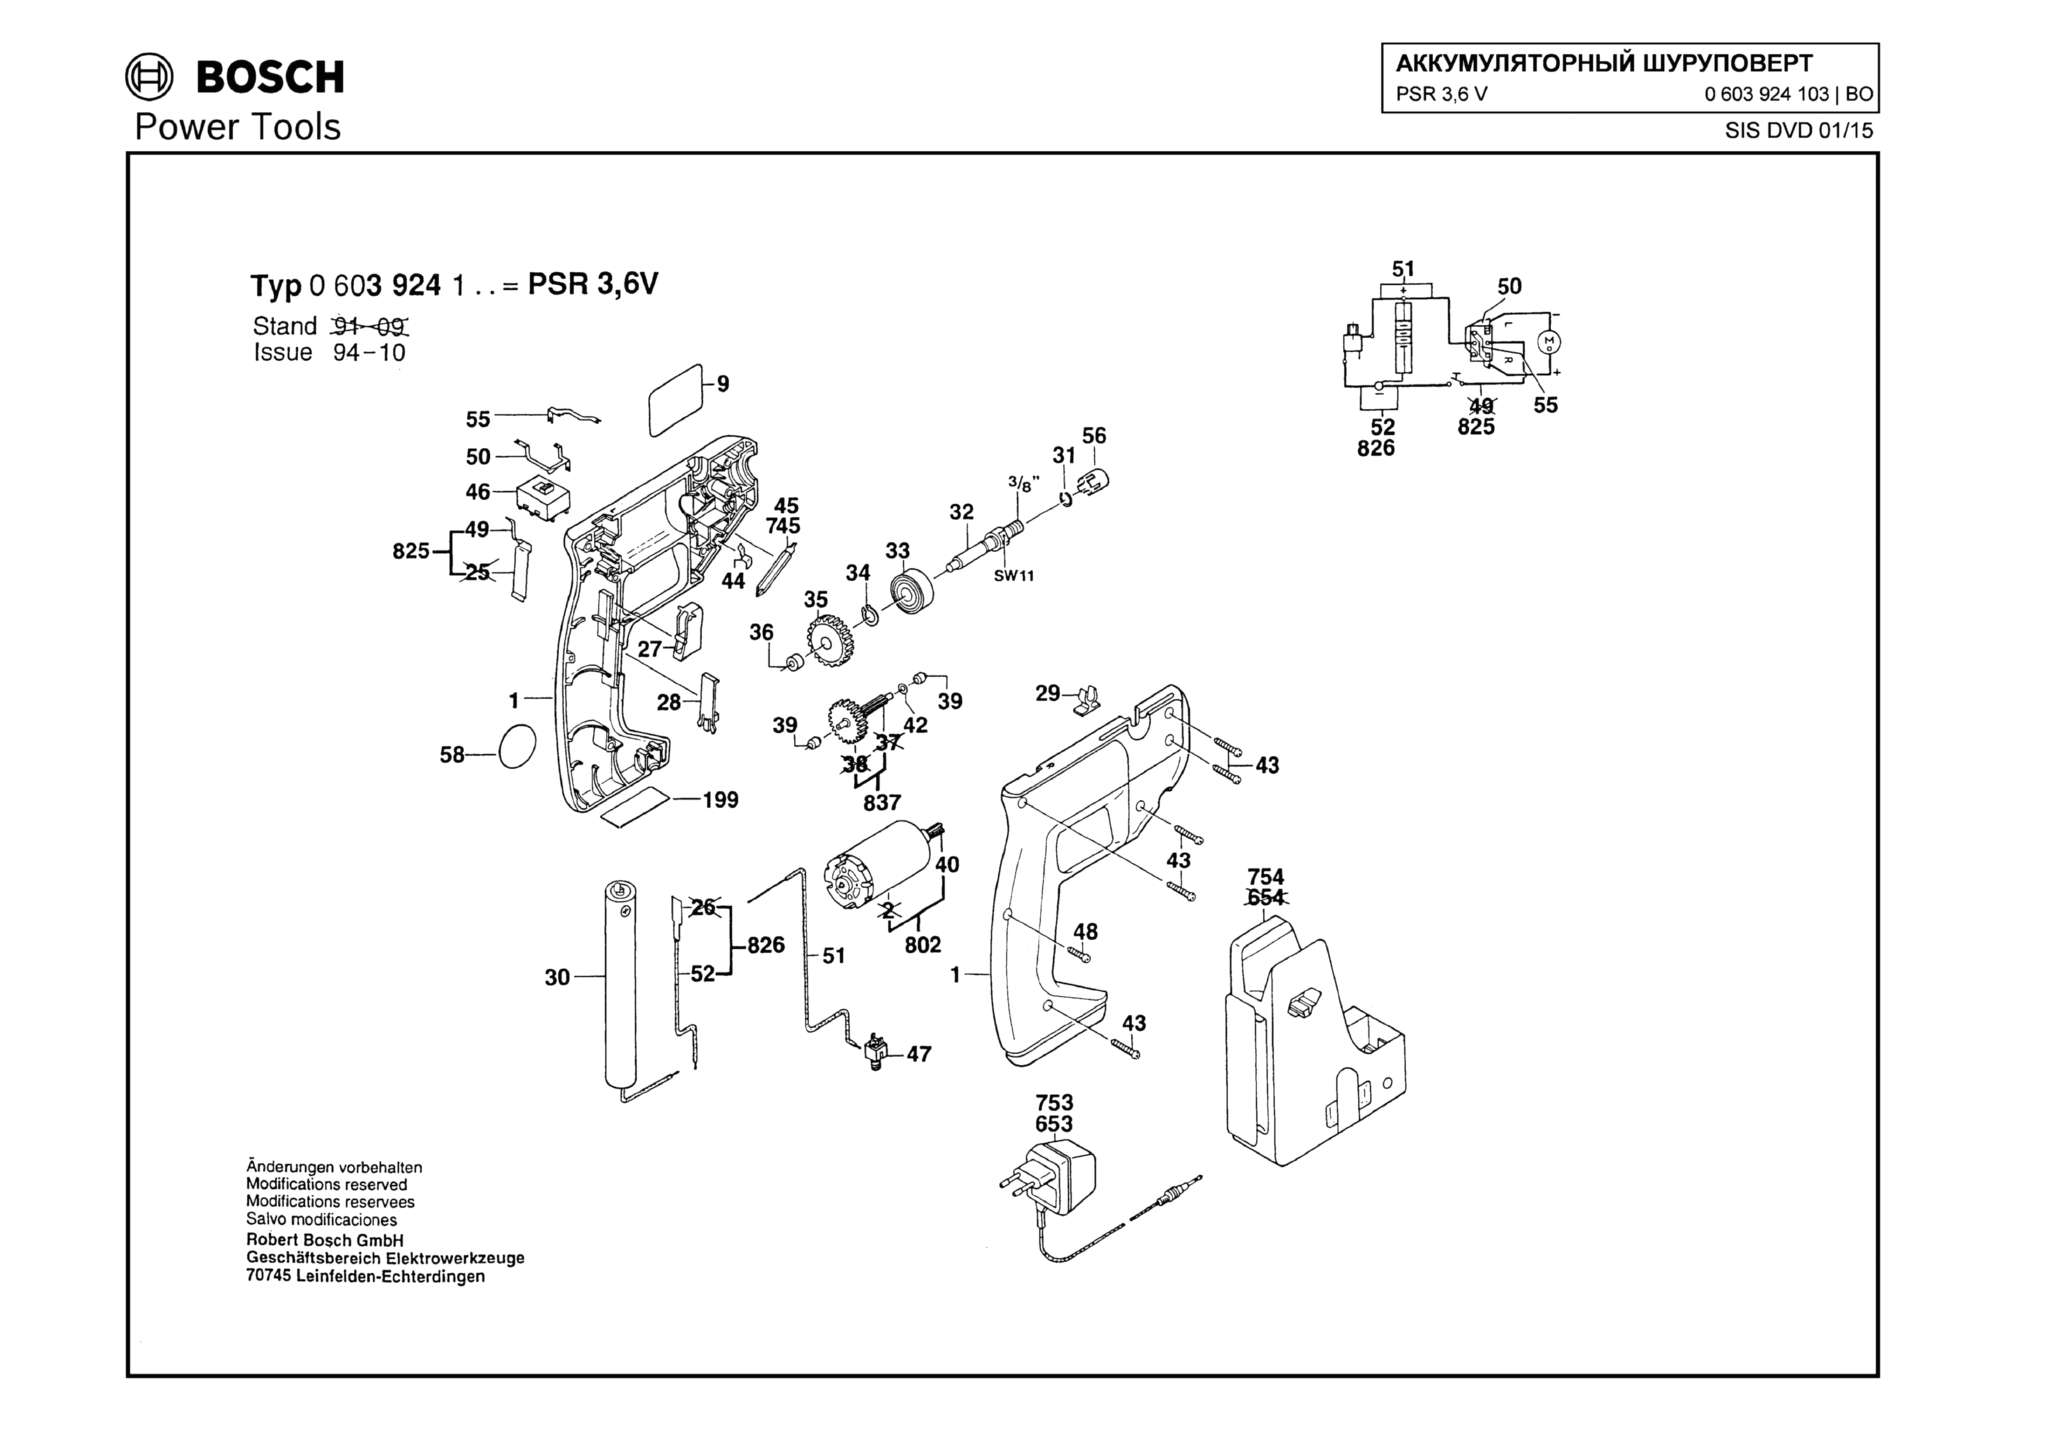 Запчасти, схема и деталировка Bosch PSR 3,6 V (ТИП 0603924103)